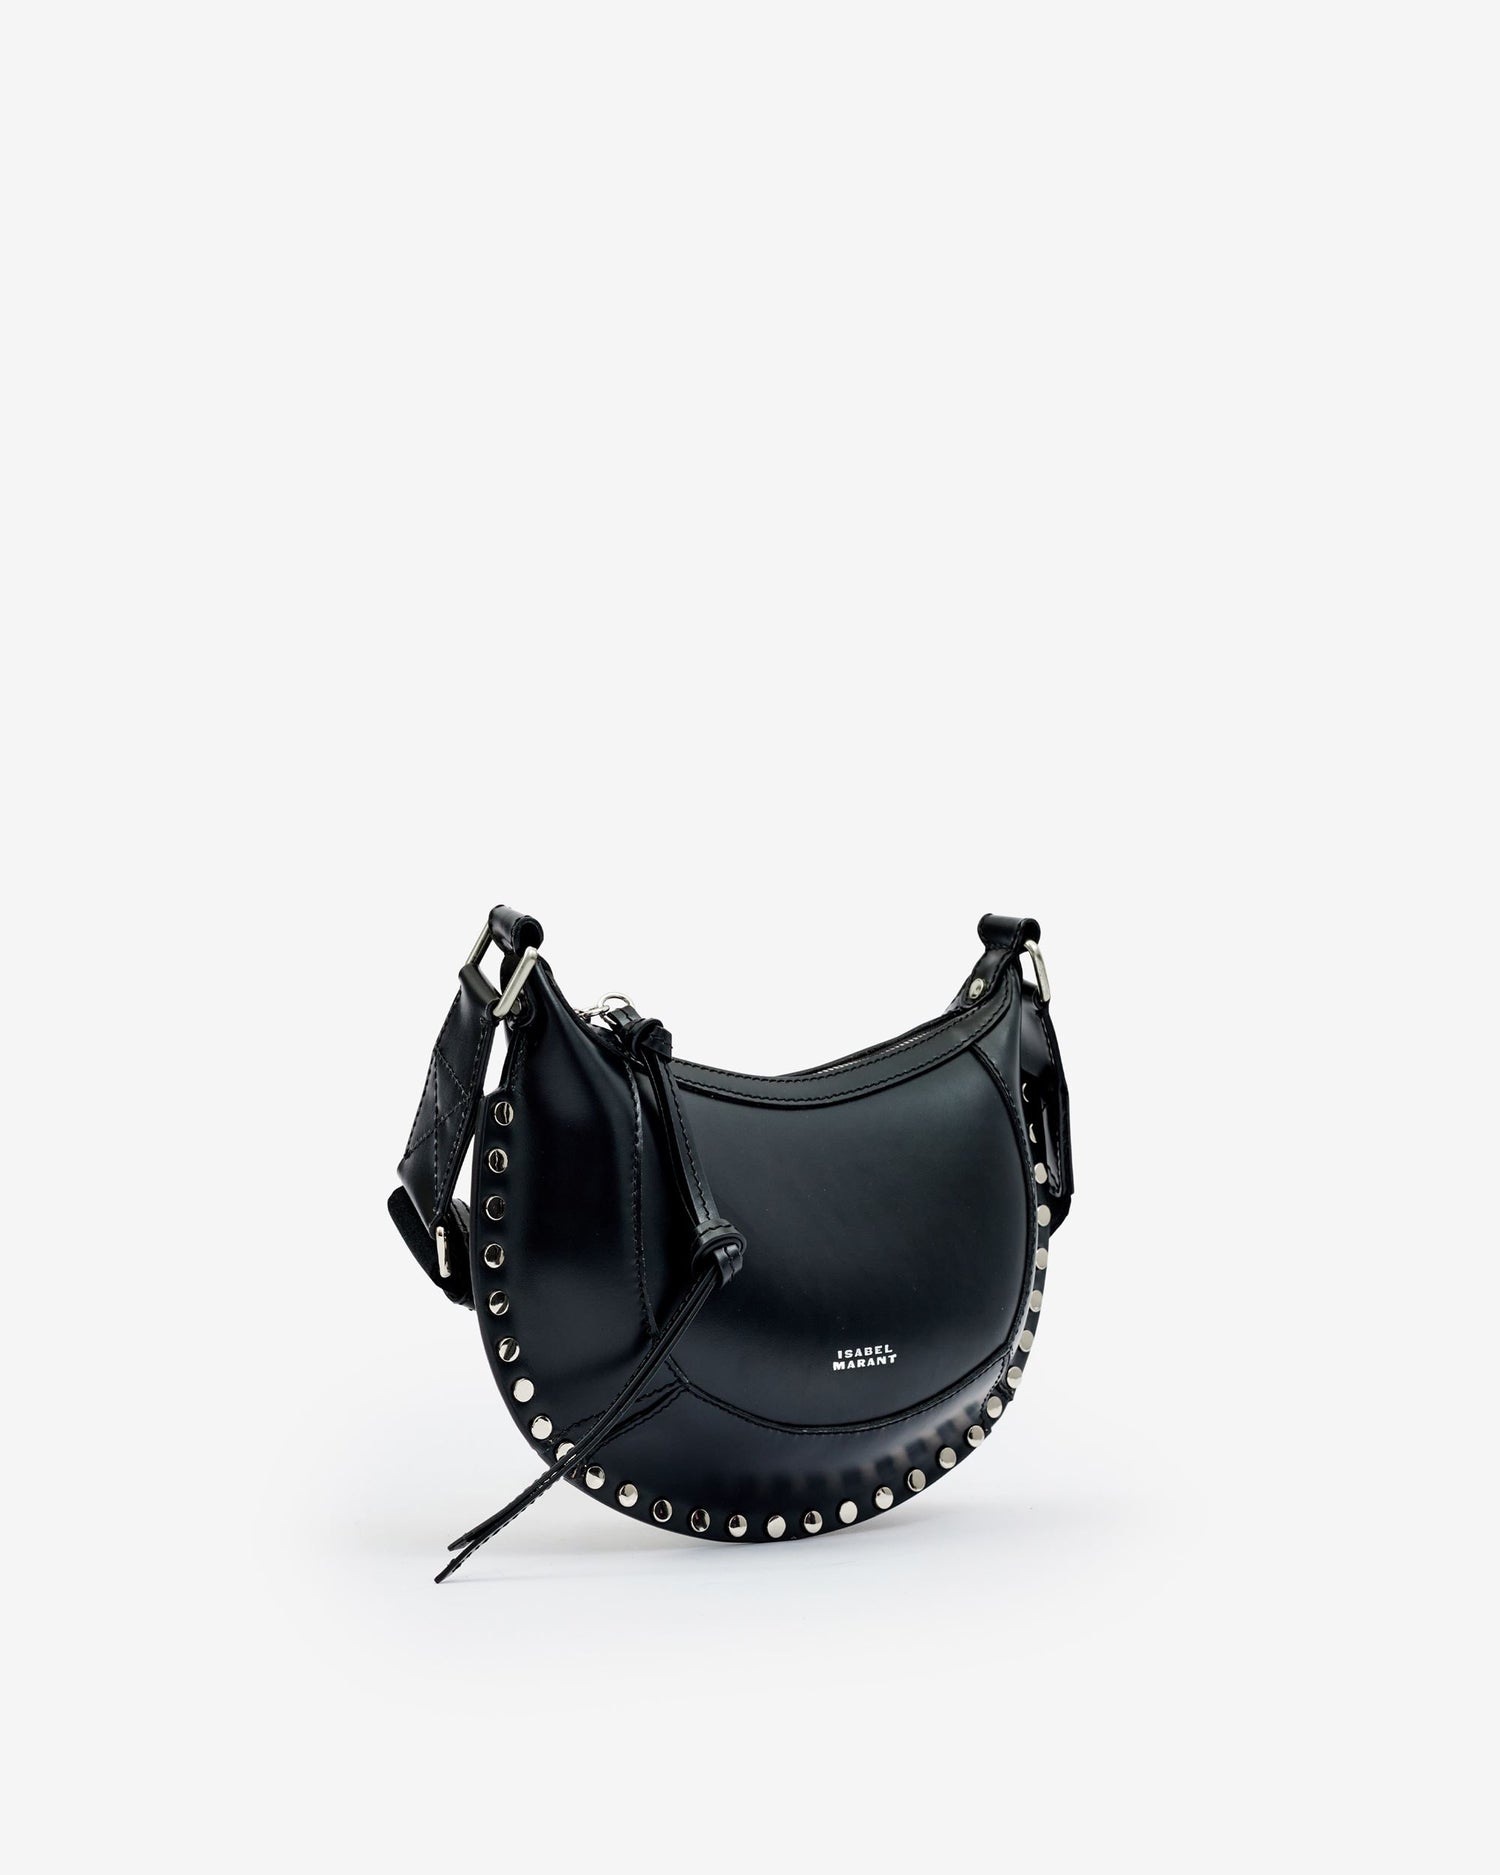 MINI MOON handbag, black/silver